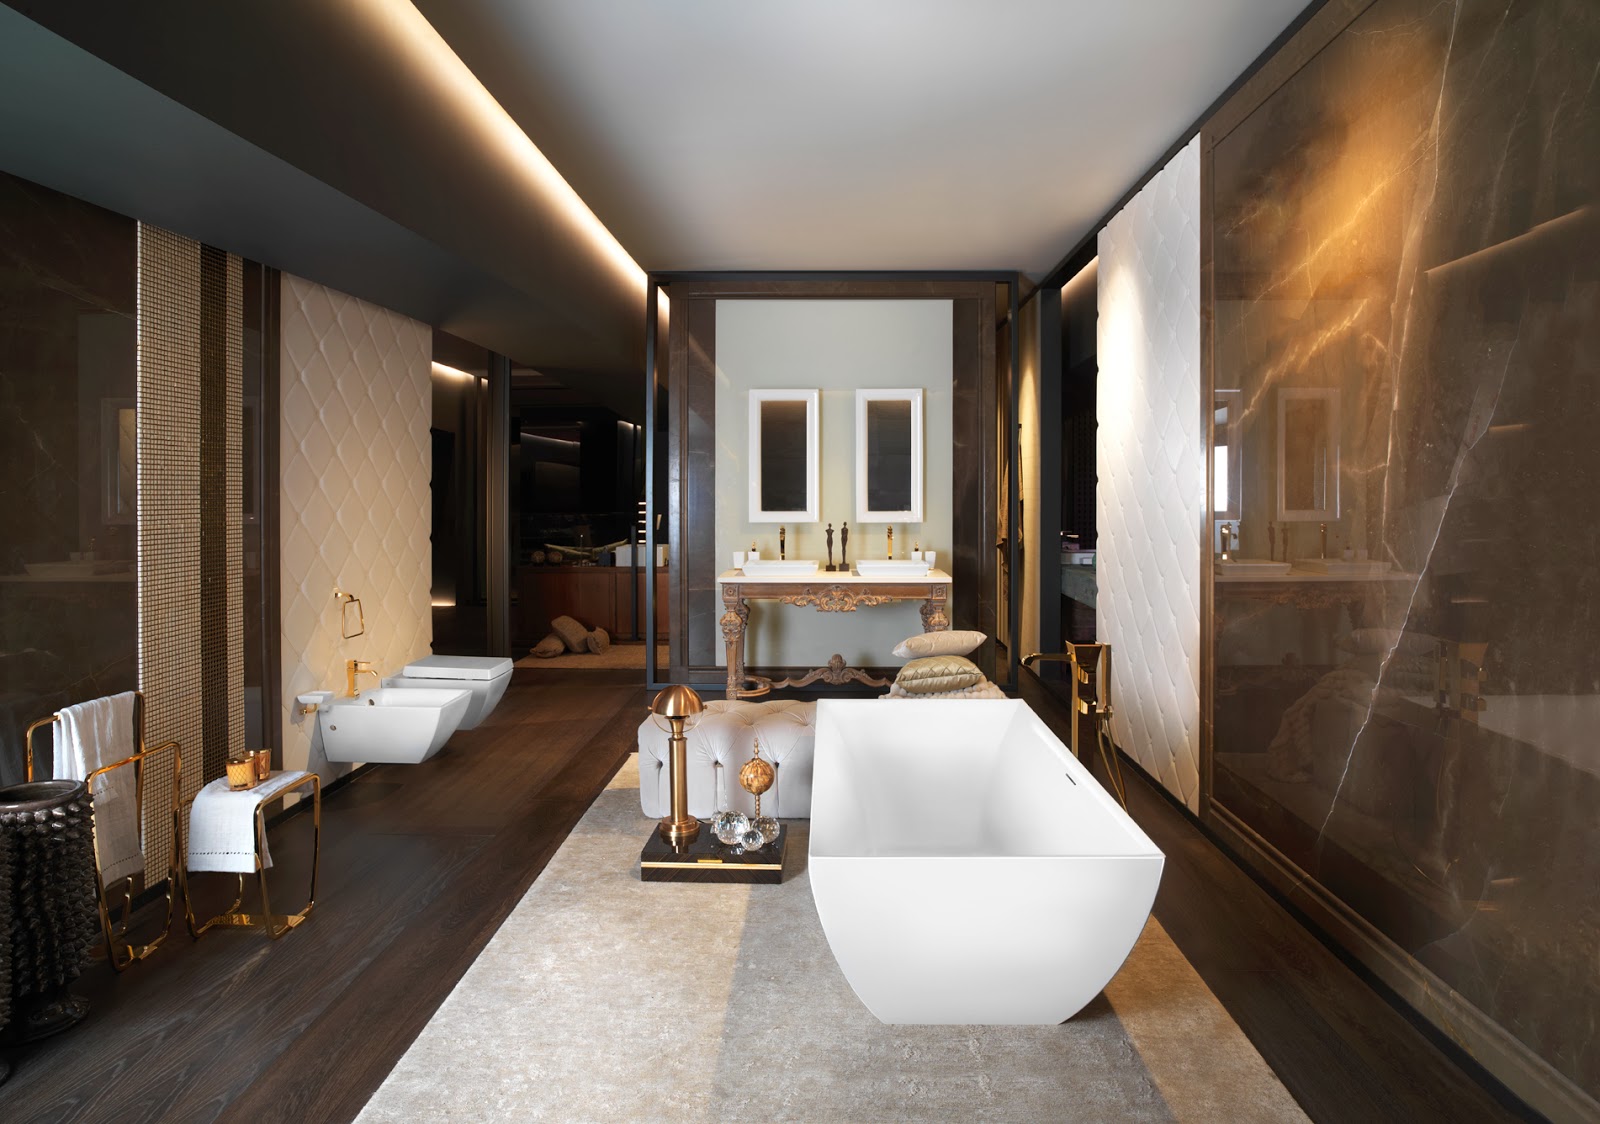 Bathroom Designs: Mimì bathtub designed by Prospero Rasulo for Gessi